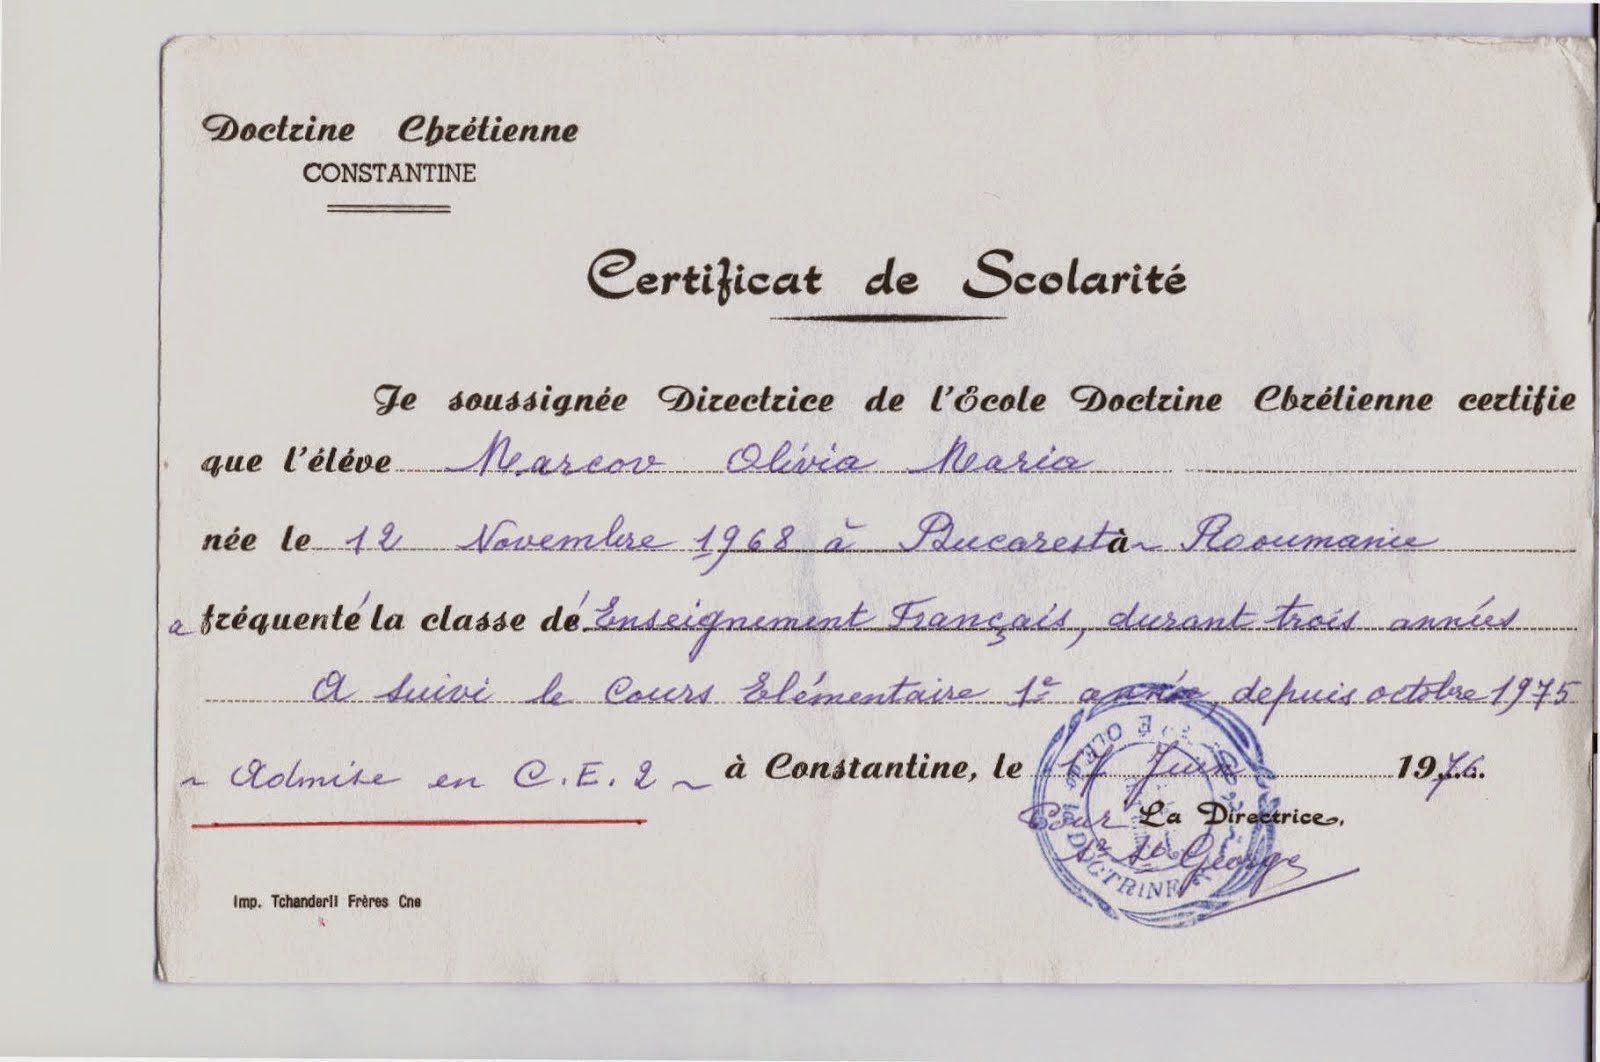 Ecole Catholique Doctrine Chretienne Certificat de Scolarite Olivia Maria Marcov 1976 Romania